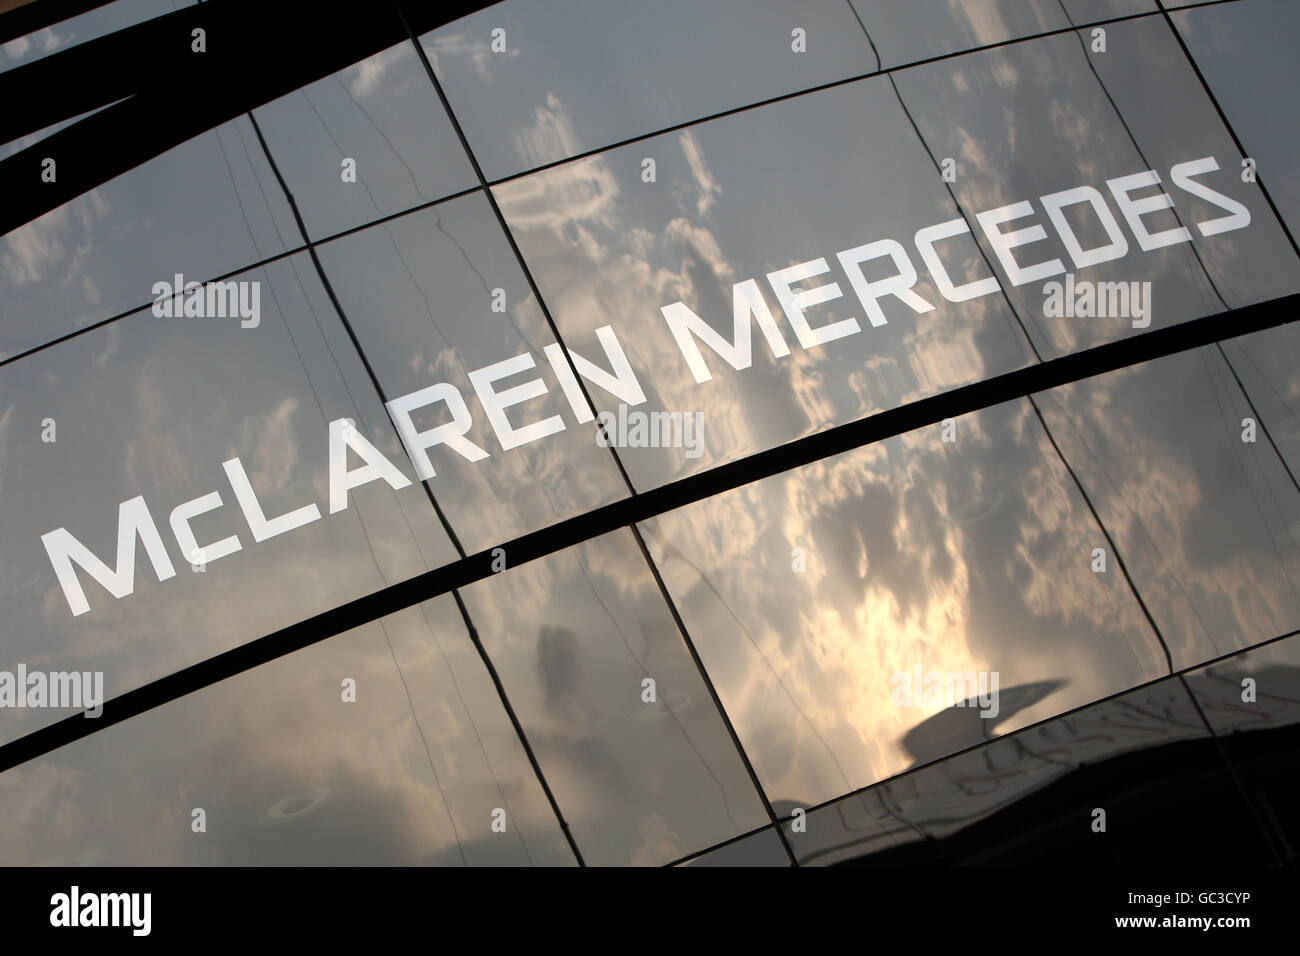 Présentation de la marque McLaren Mercedes lors de la deuxième pratique sur le circuit de Monza, en Italie. Banque D'Images